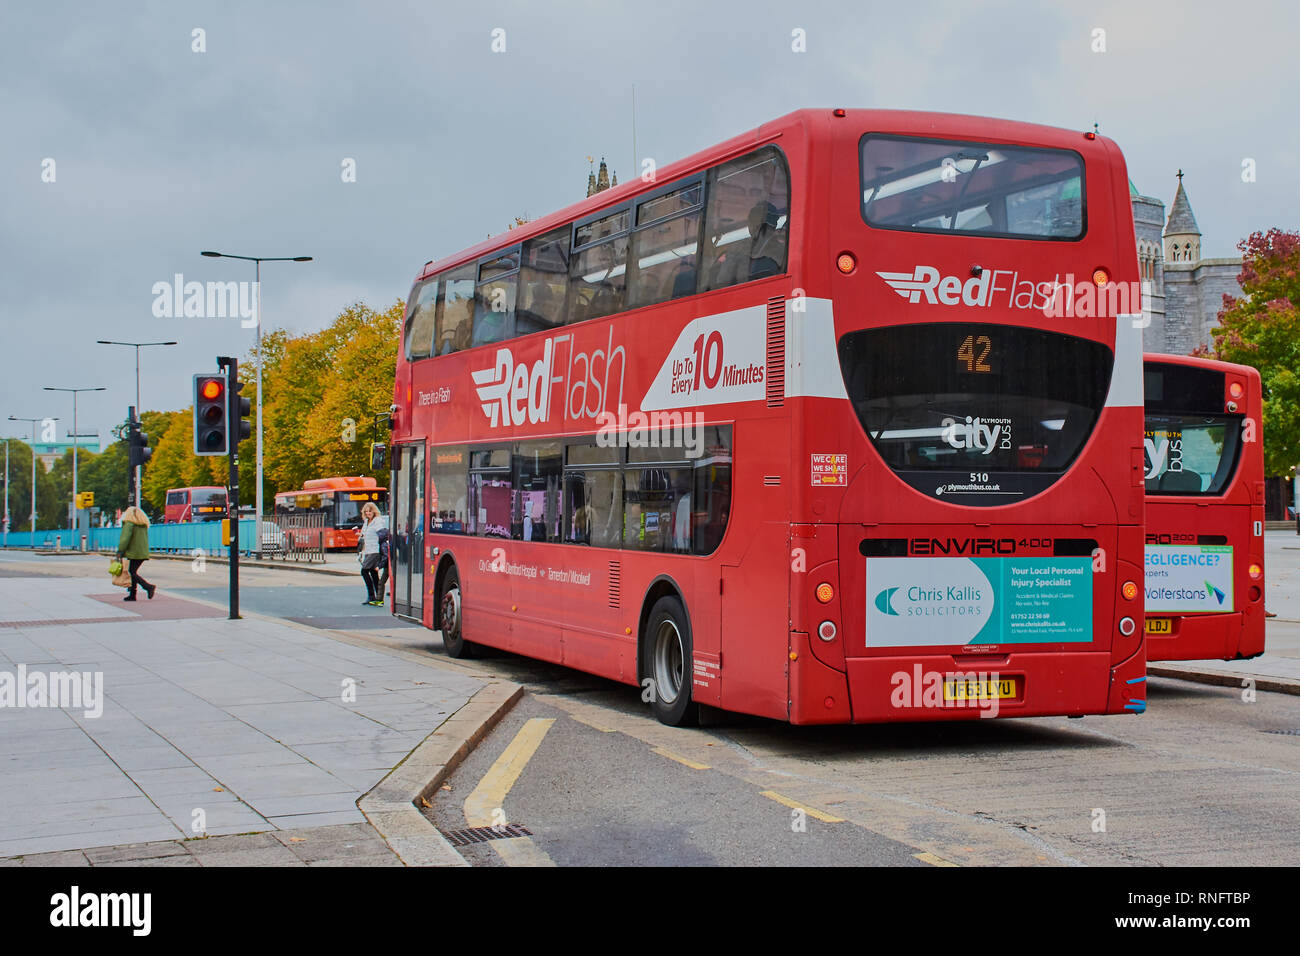 Plymouth, England - Oktober 08, 2018: Rot modern Double Decker Bus wartet auf eine rote Ampel in der Stadt Plymouth, England. Stockfoto